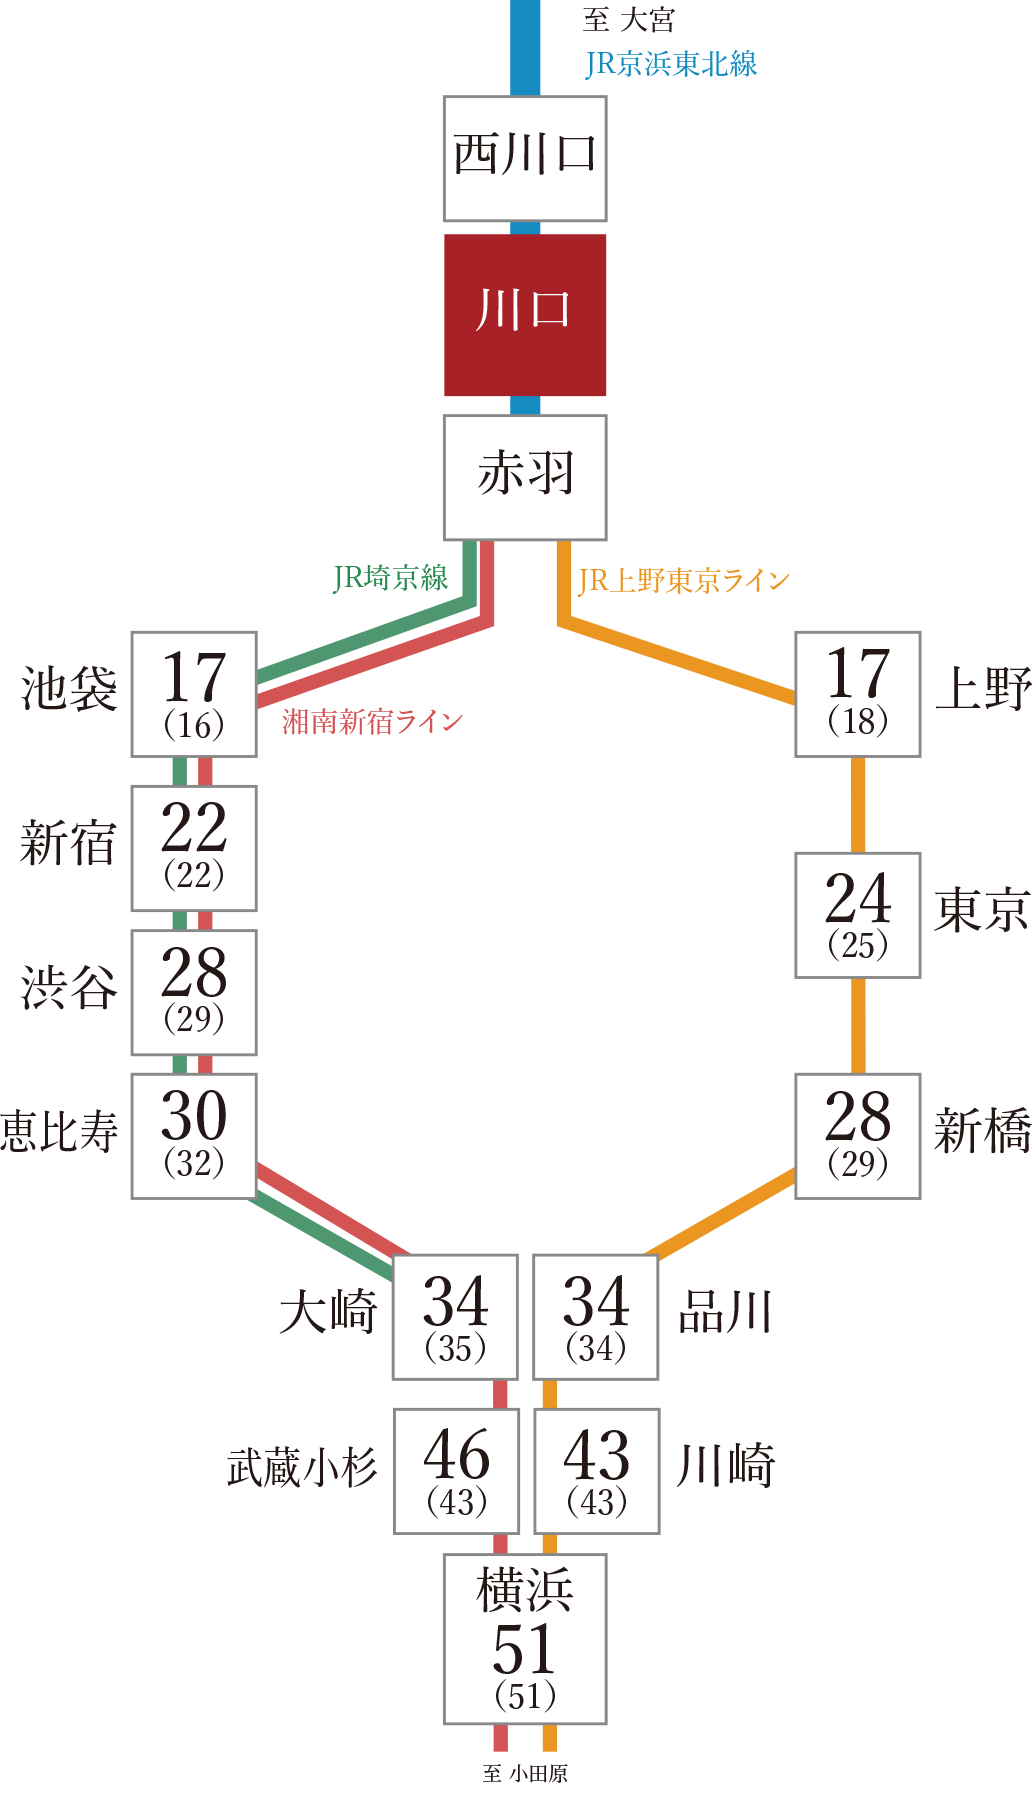 「赤羽」駅でJR湘南新宿ライン・JR埼京線、JR上野東京ラインに乗り換え